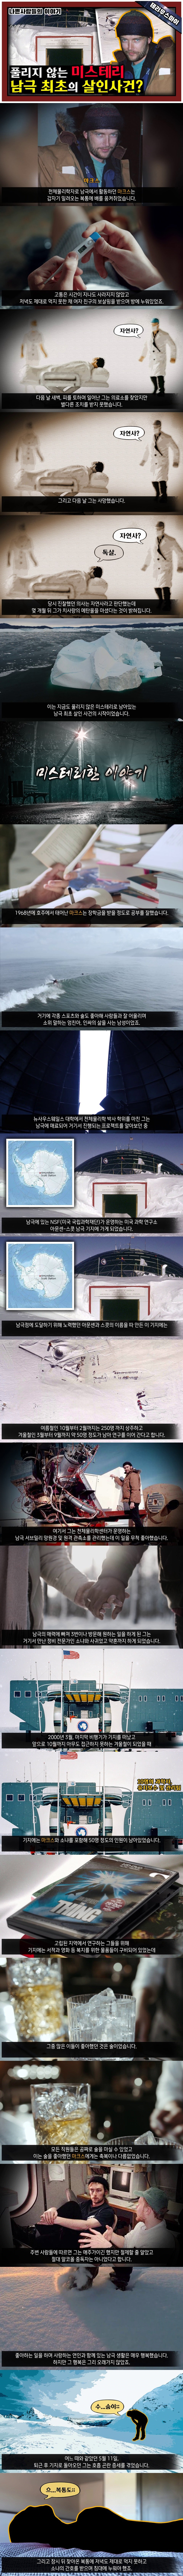 01.jpg [미스테리] 고립된 남극 기지에서 사망한 남성. 근데 무언가 좀 이상하다?